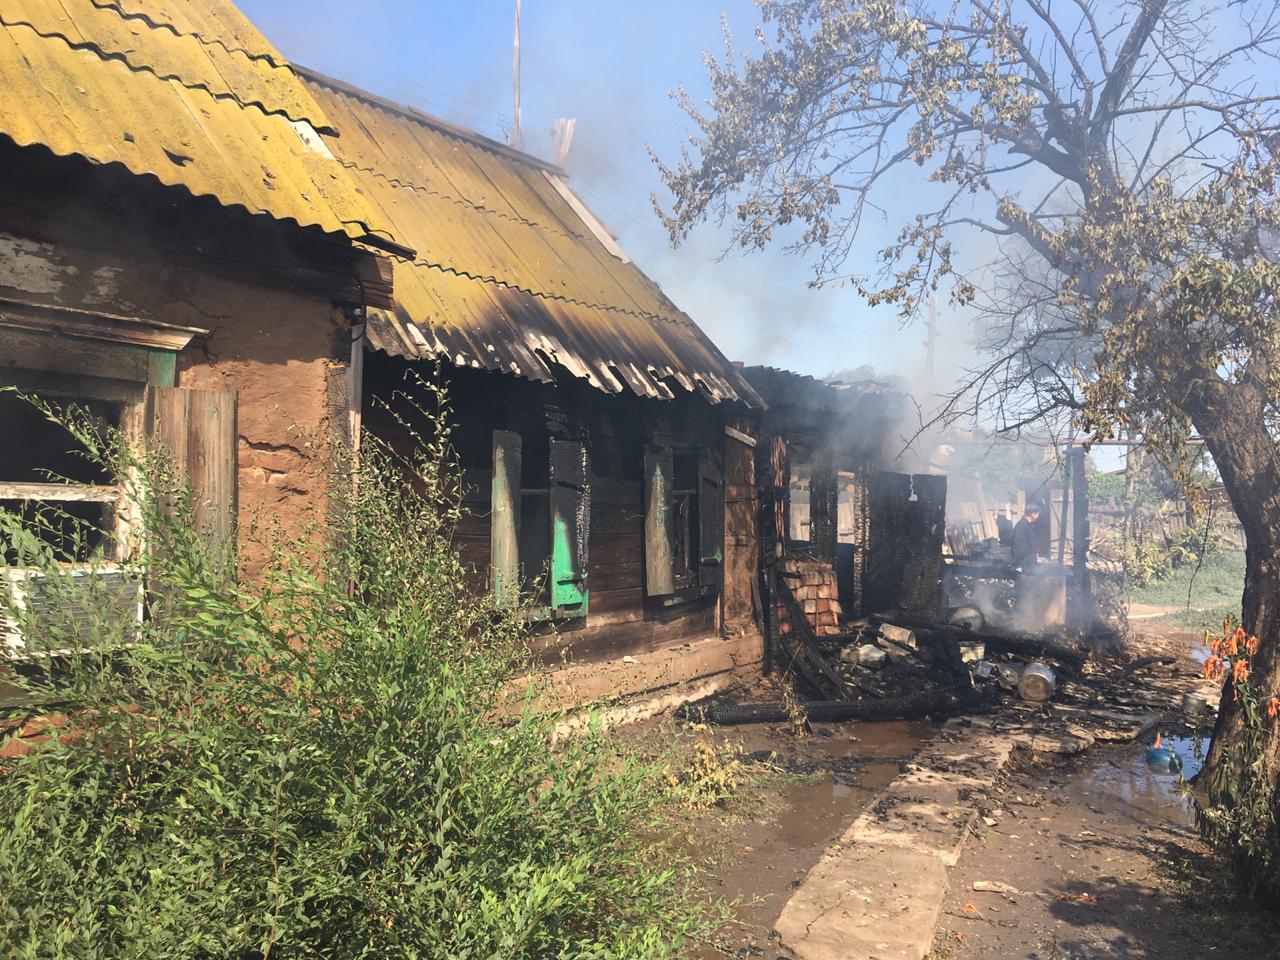 В Астраханской области загорелся жилой дом, на пожаре обнаружены погибшие